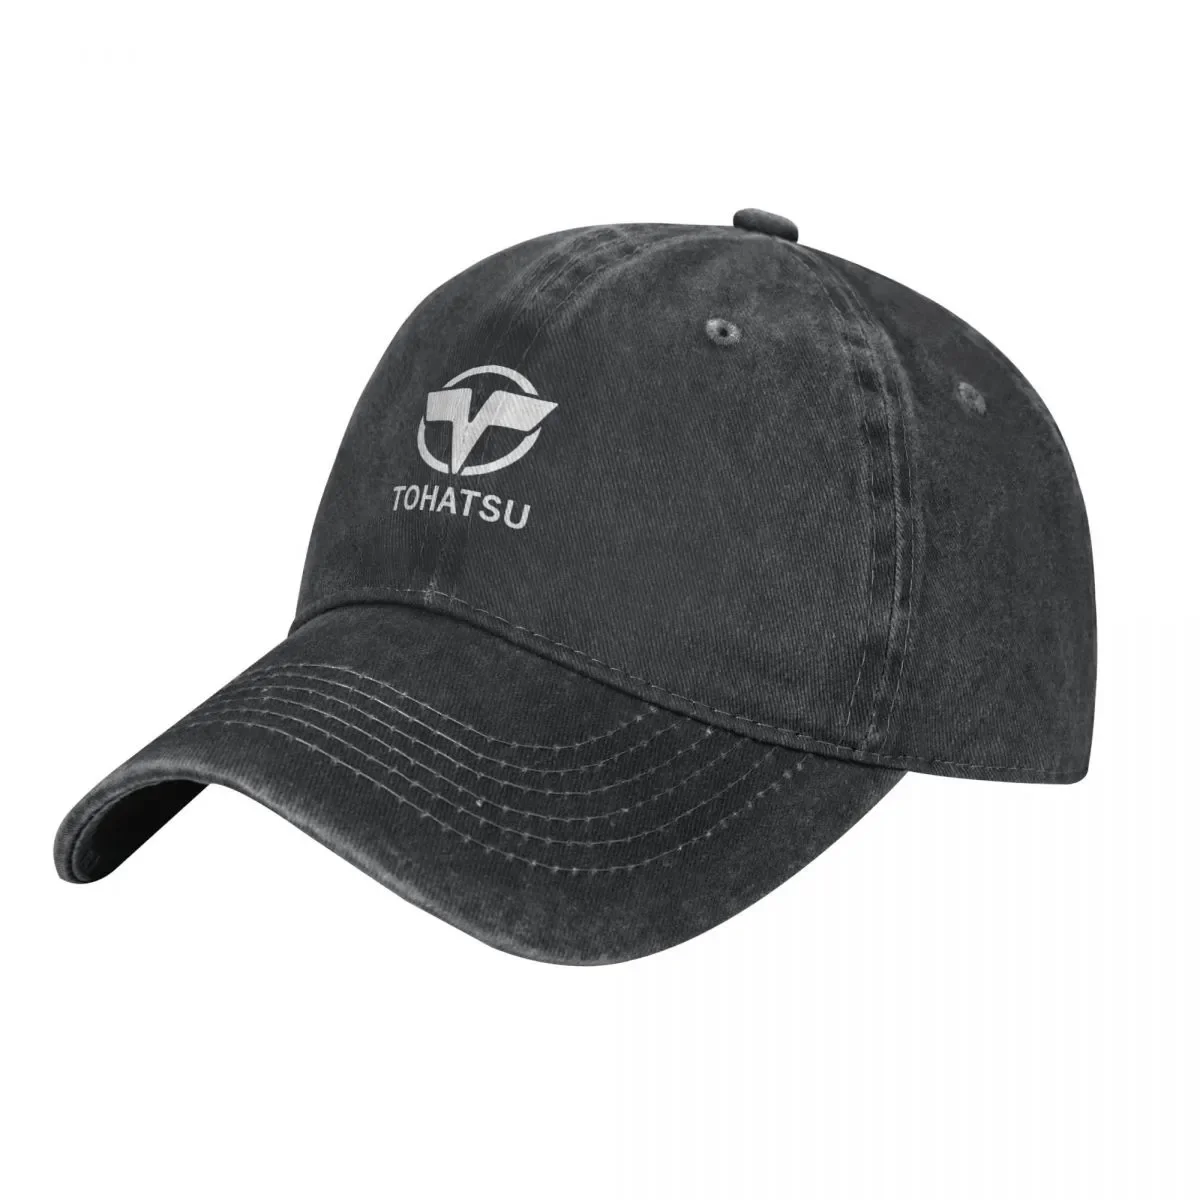 

New kutakantau-Tohatsu-dansemua Baseball Cap Snapback Cap Thermal Visor Fishing Caps Designer Hat Caps For Women Men'S